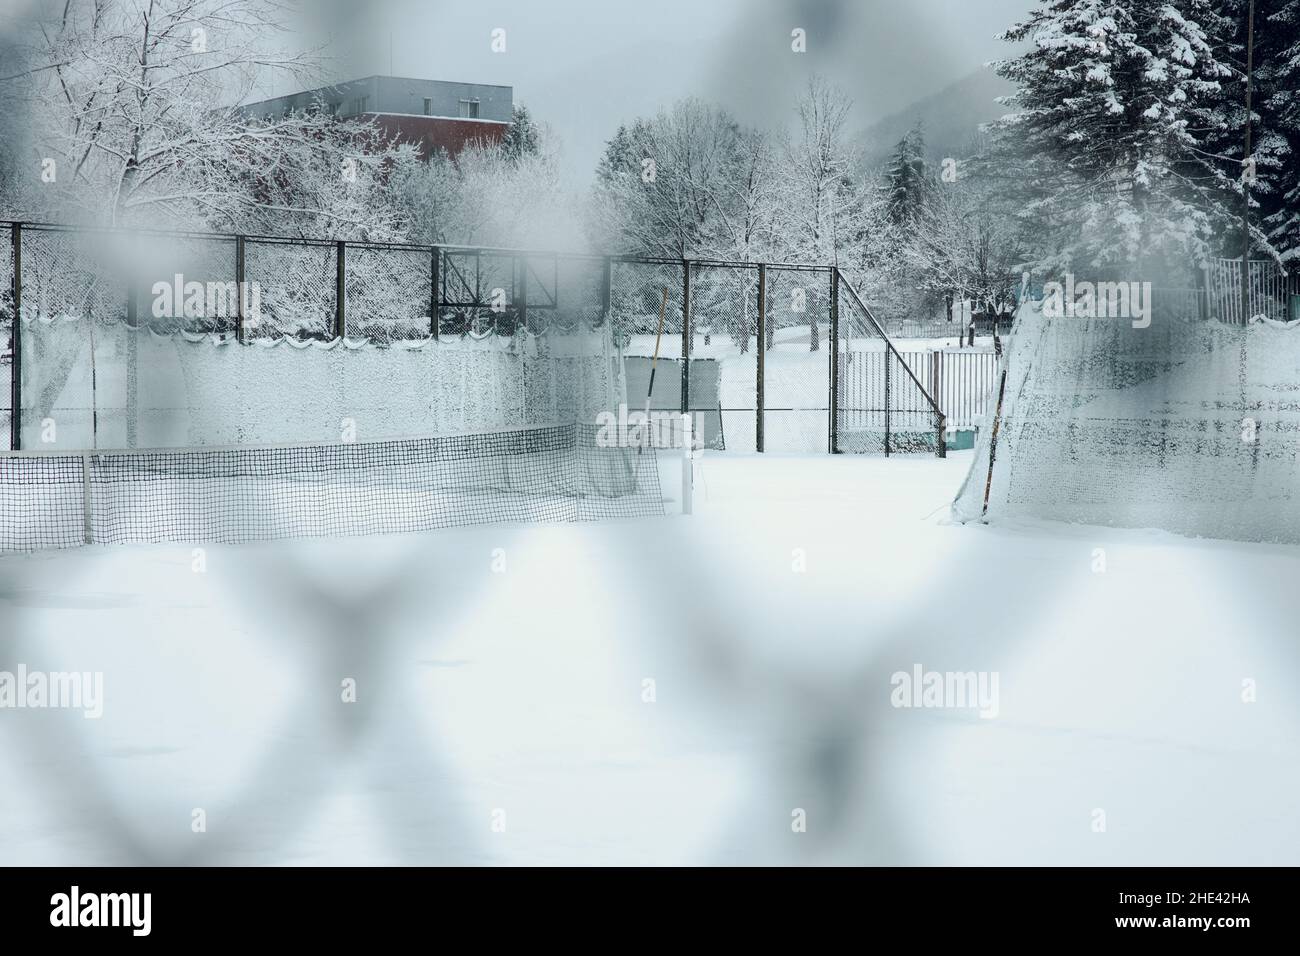 Un campo di calcio vuoto in Bulgaria coperto di neve. Stagione invernale. Le porte da calcio sono vuote e bianche con la neve. Foto di alta qualità Foto Stock